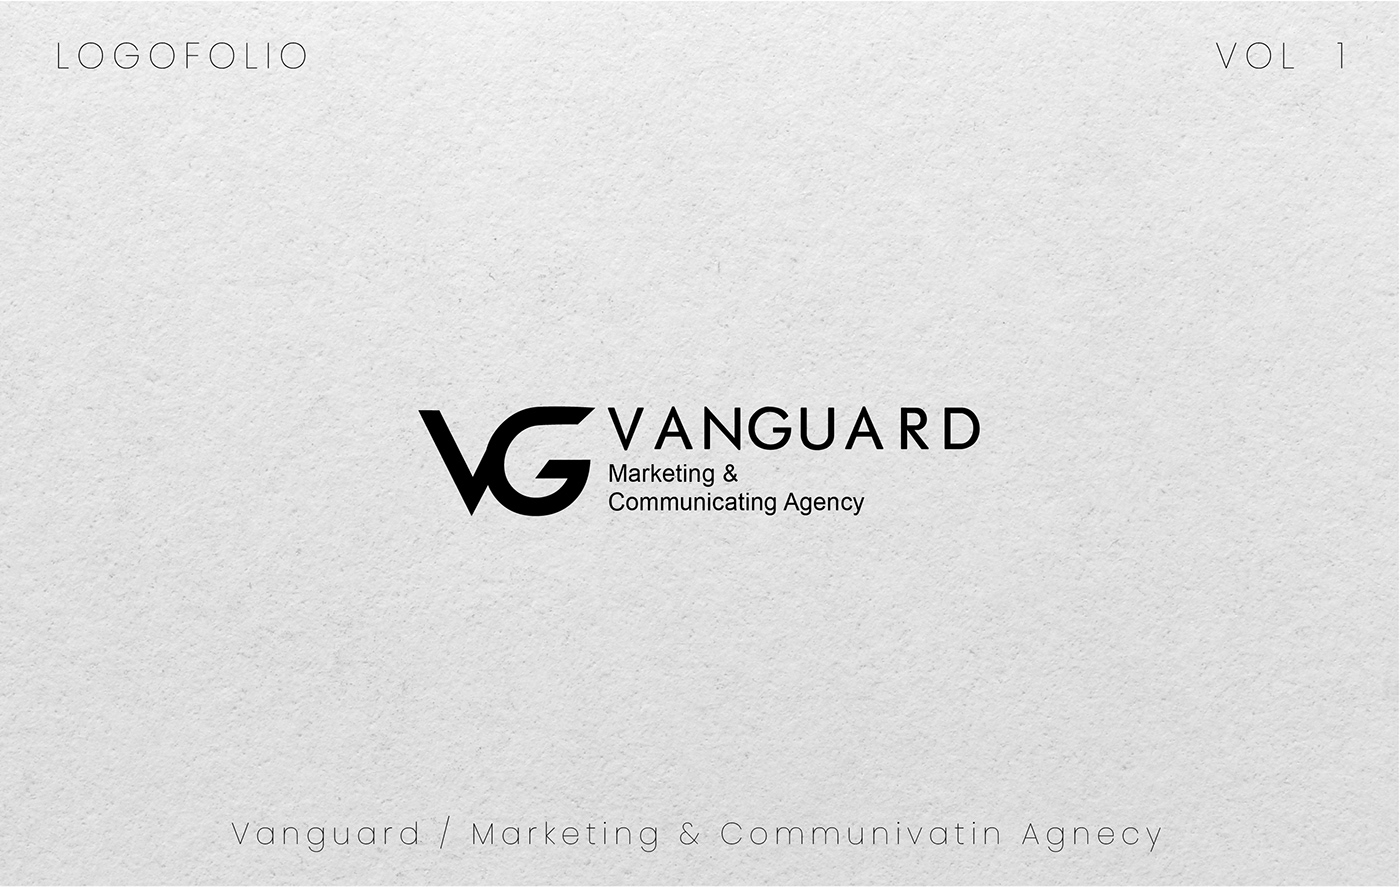 monogram logo initials Logo Design logos Logotype logofolio marks Logotipo Brand Design logo